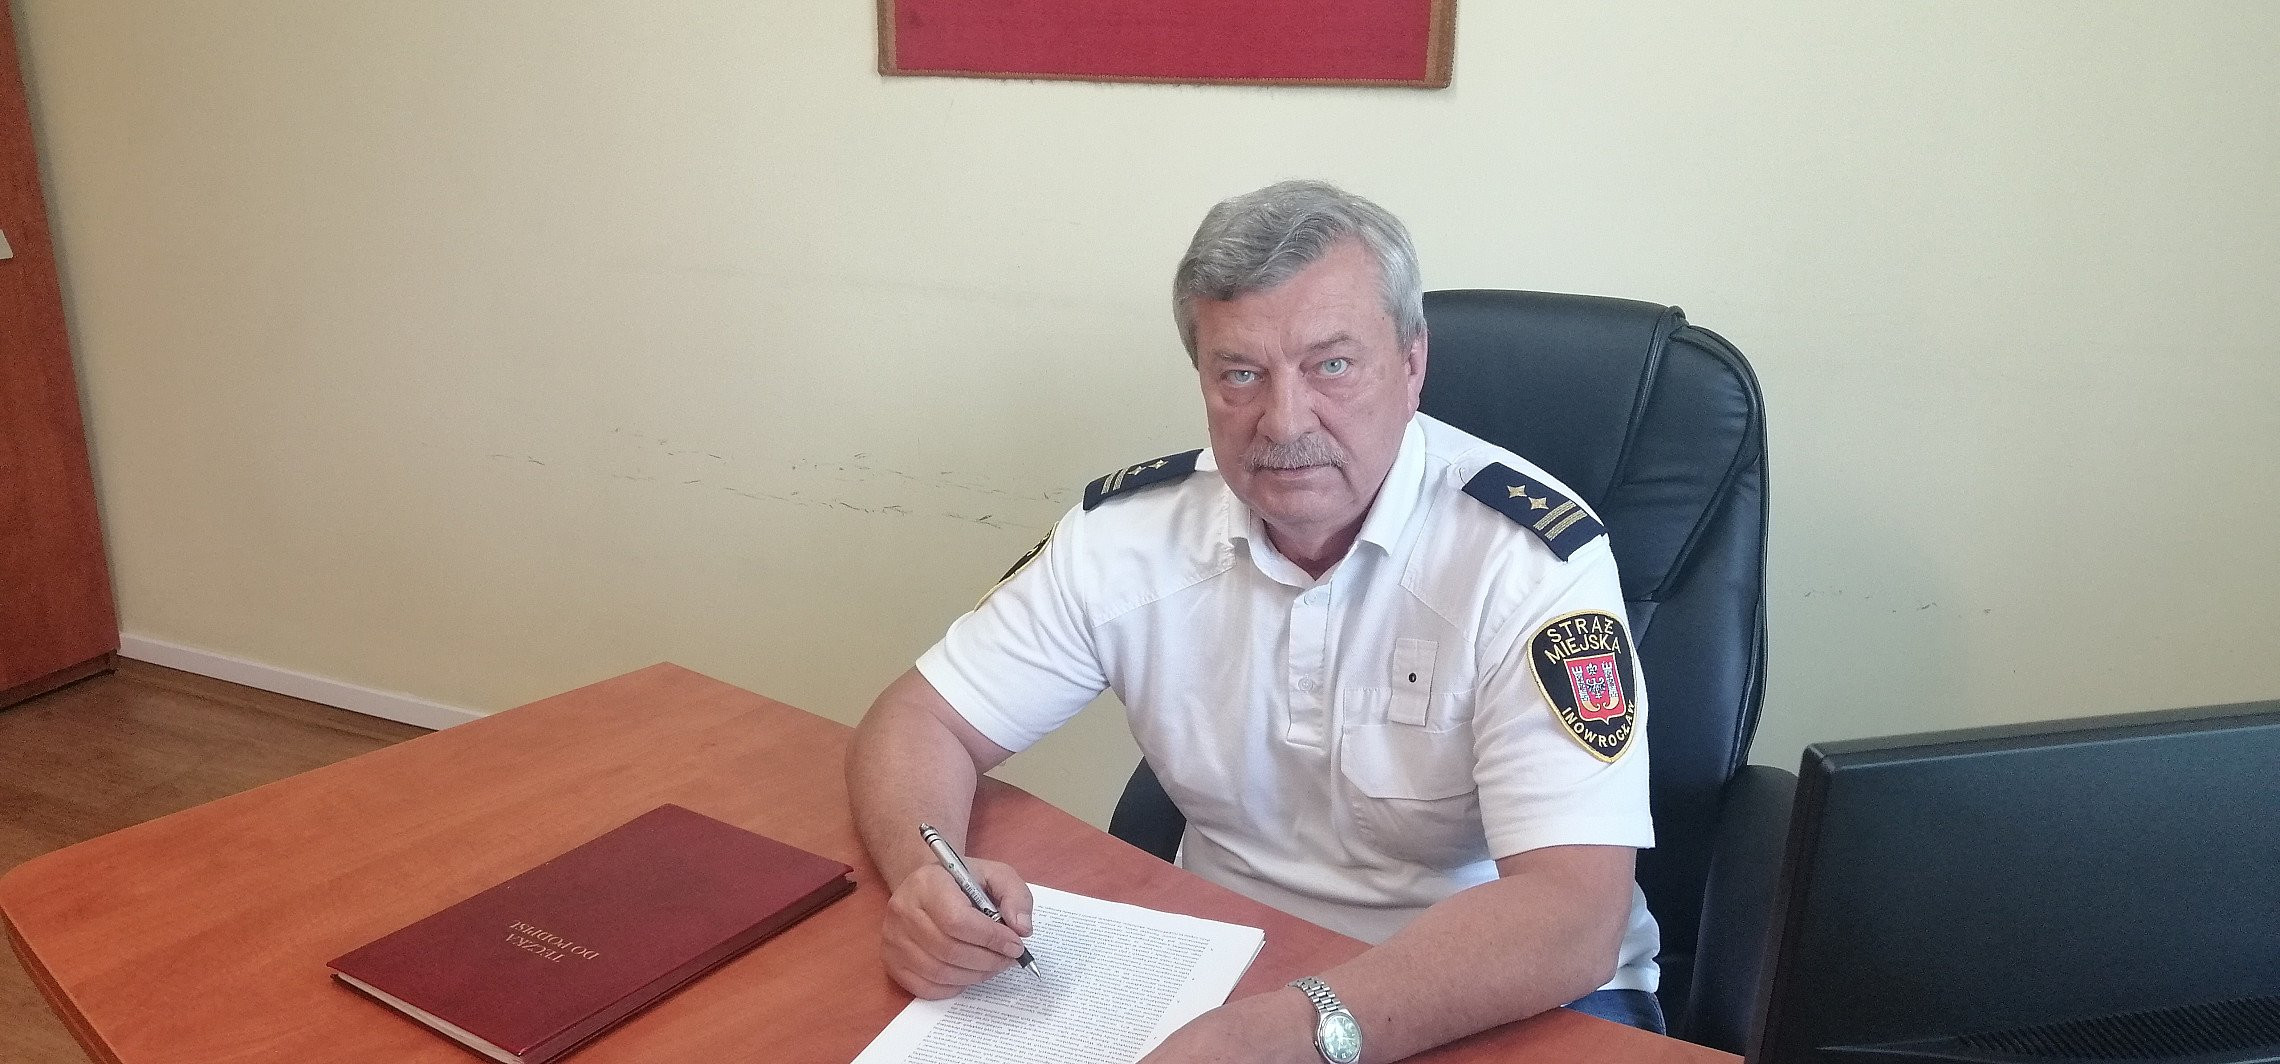 Inowrocław - Szef straży miejskiej odpowiada na nasze pytania